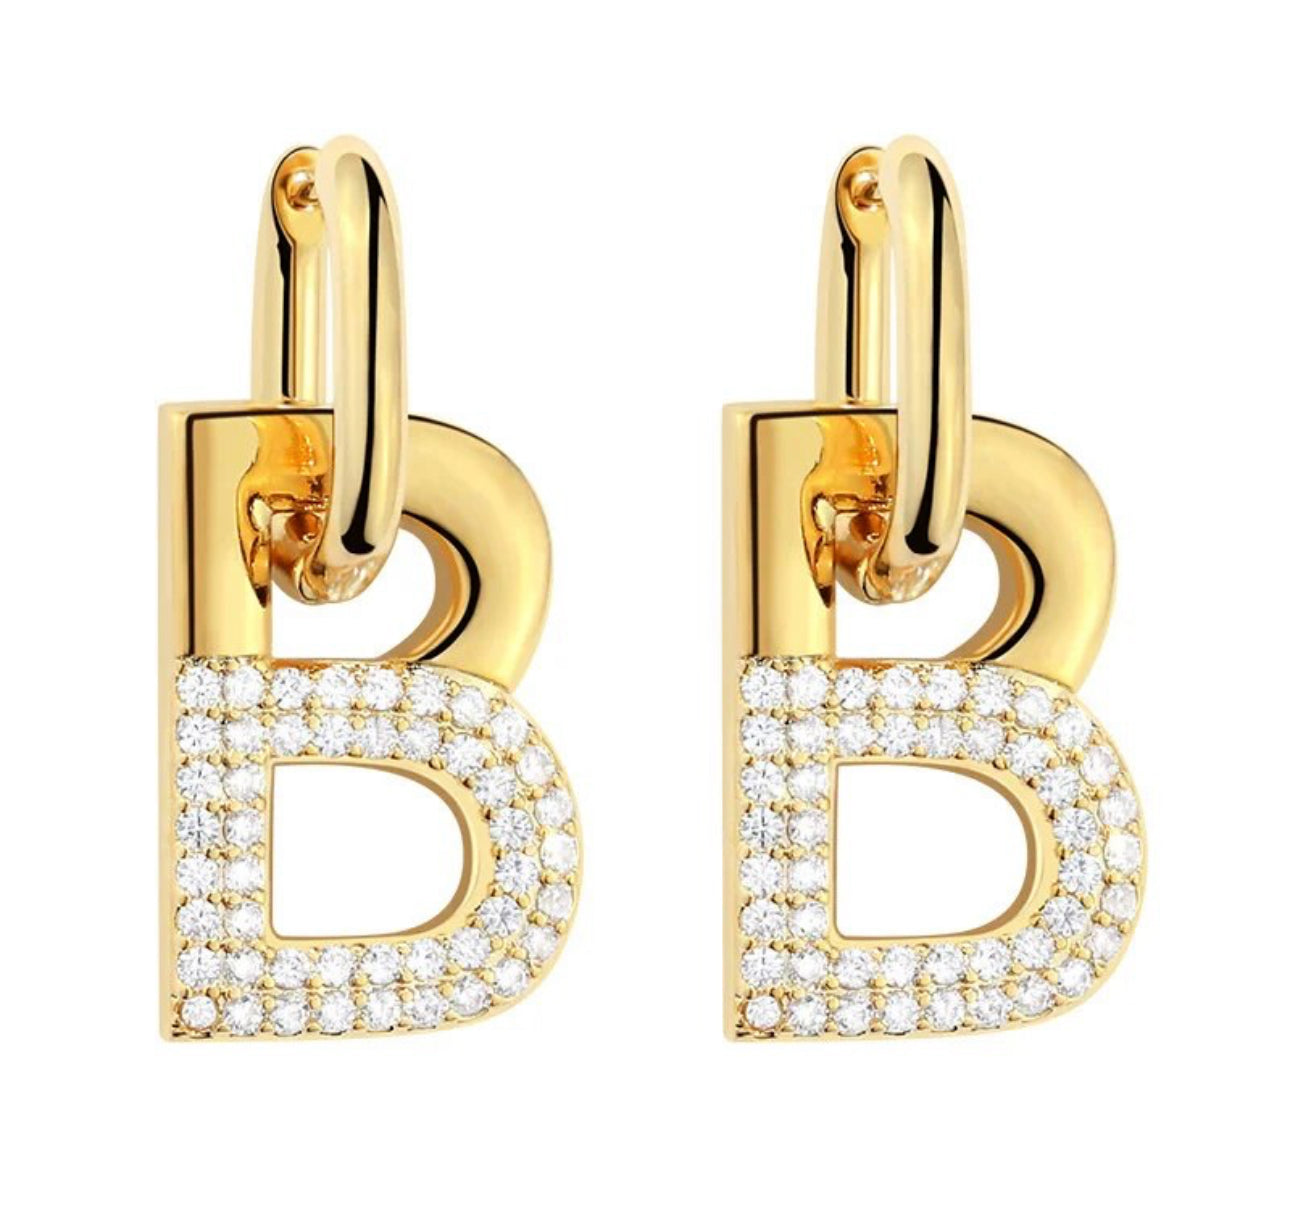 B Earrings